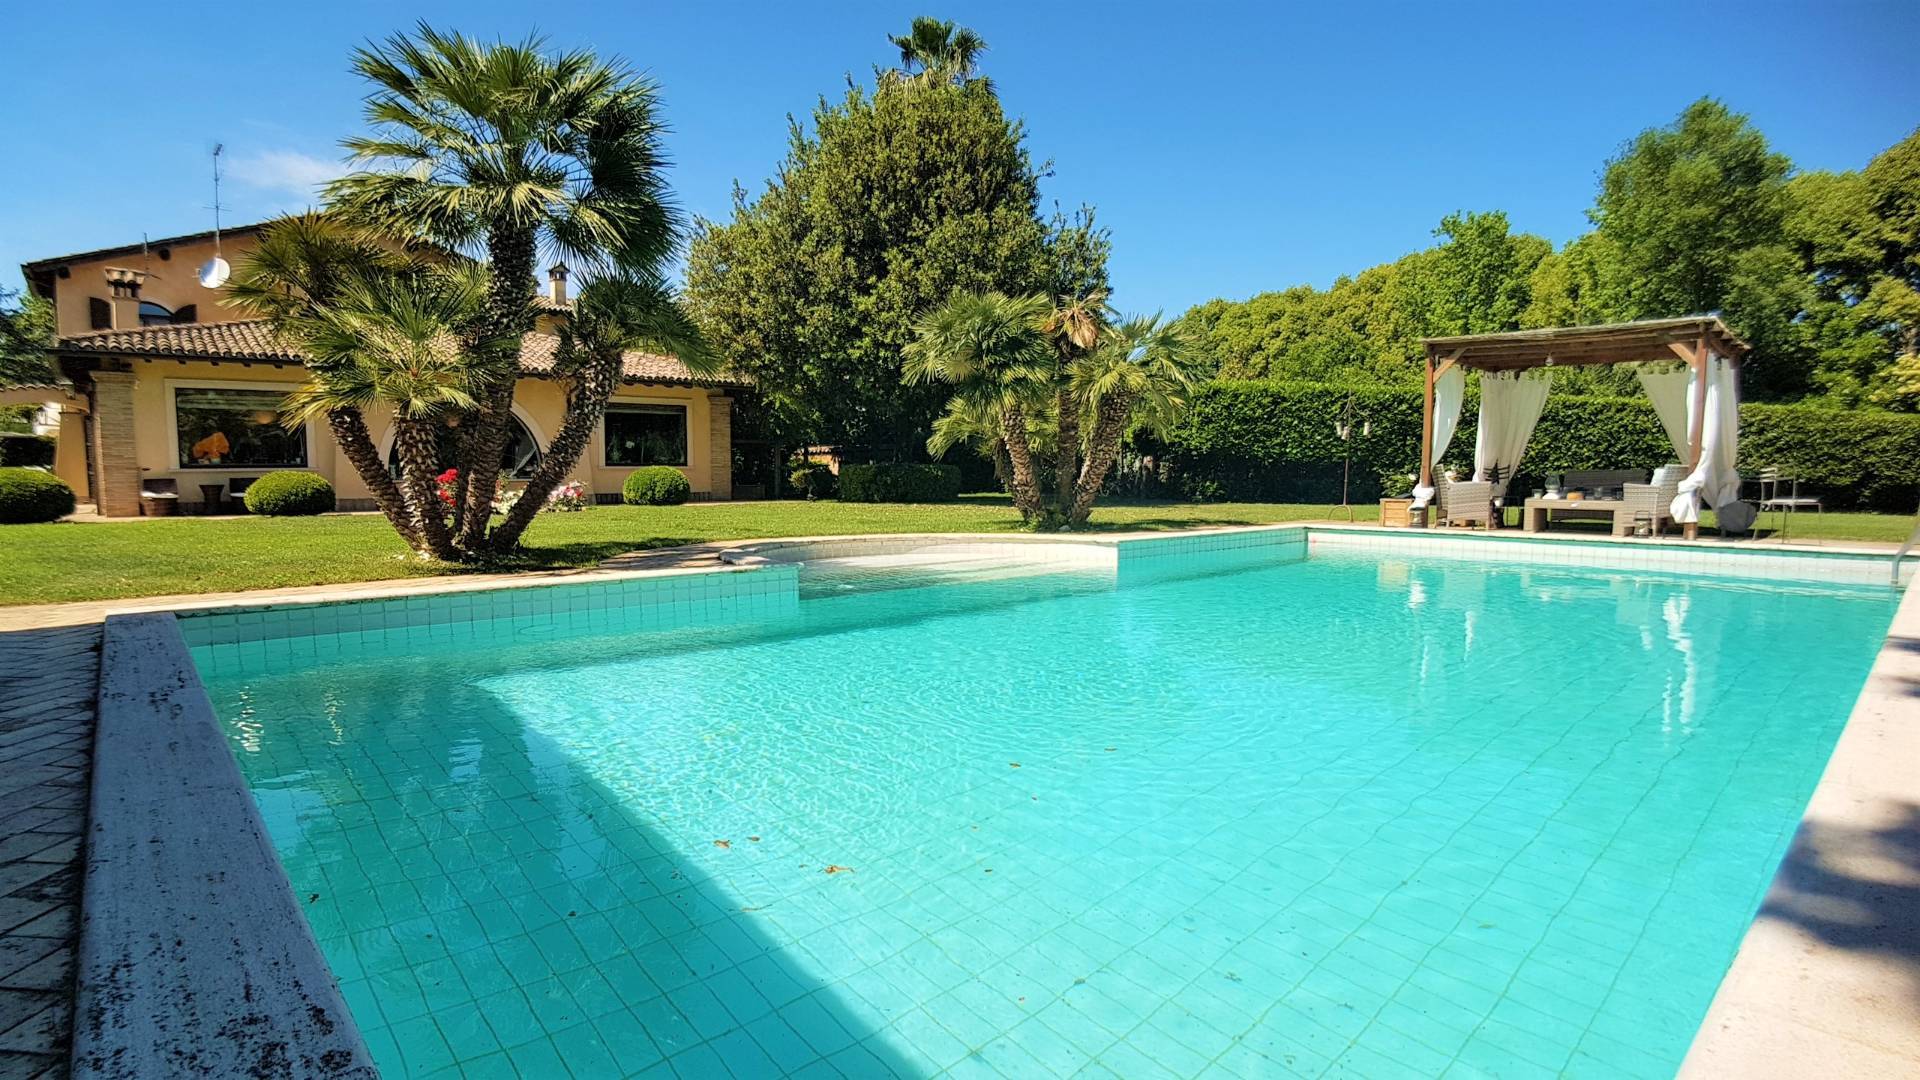 Villa in vendita a Roma, 17 locali, zona Zona: 42 . Cassia - Olgiata, prezzo € 1.350.000 | CambioCasa.it